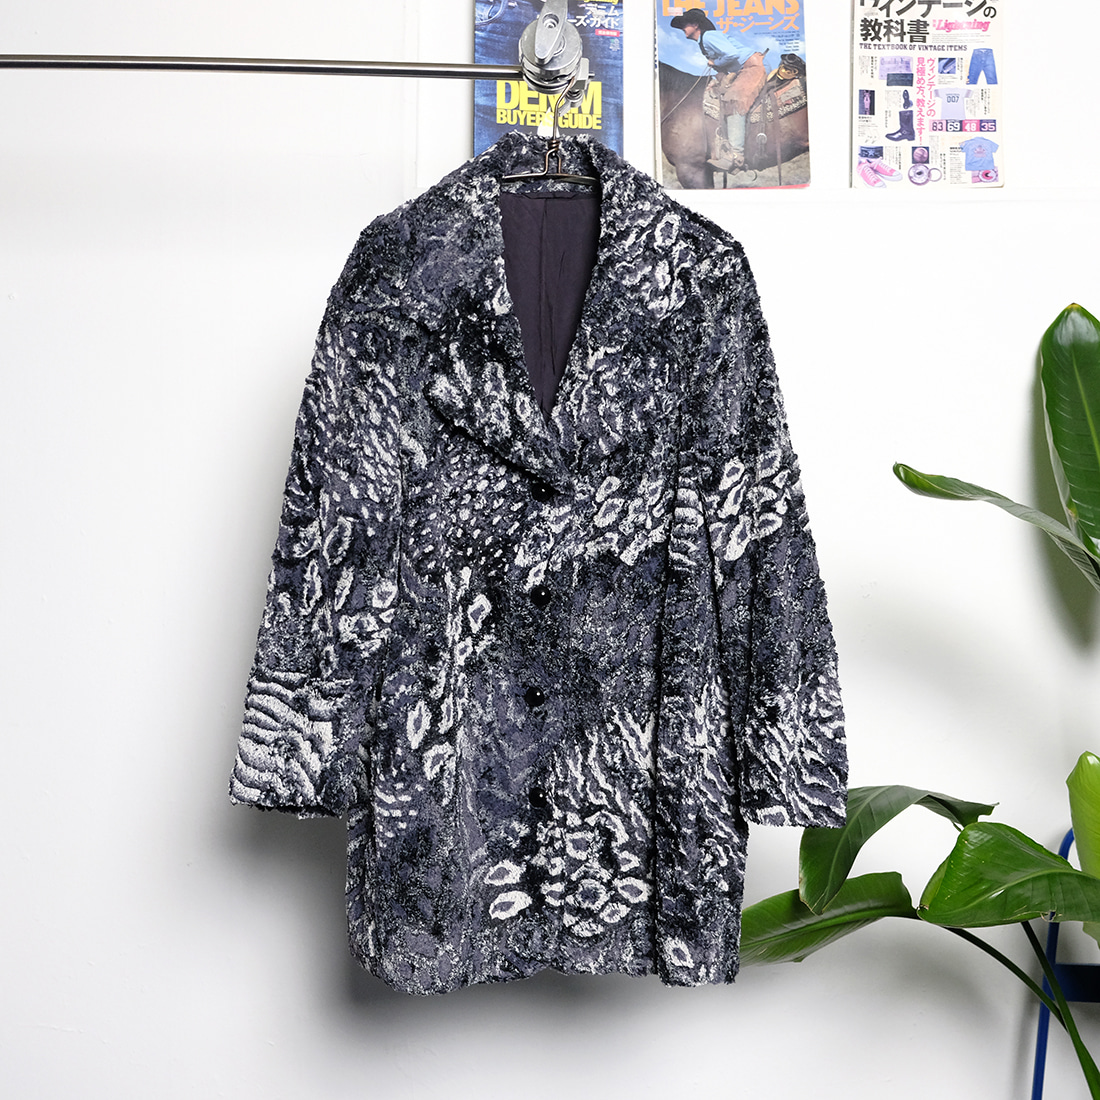 유나이티드 애로우즈 / Made in japan  United arrows zeebra pattern fur coat